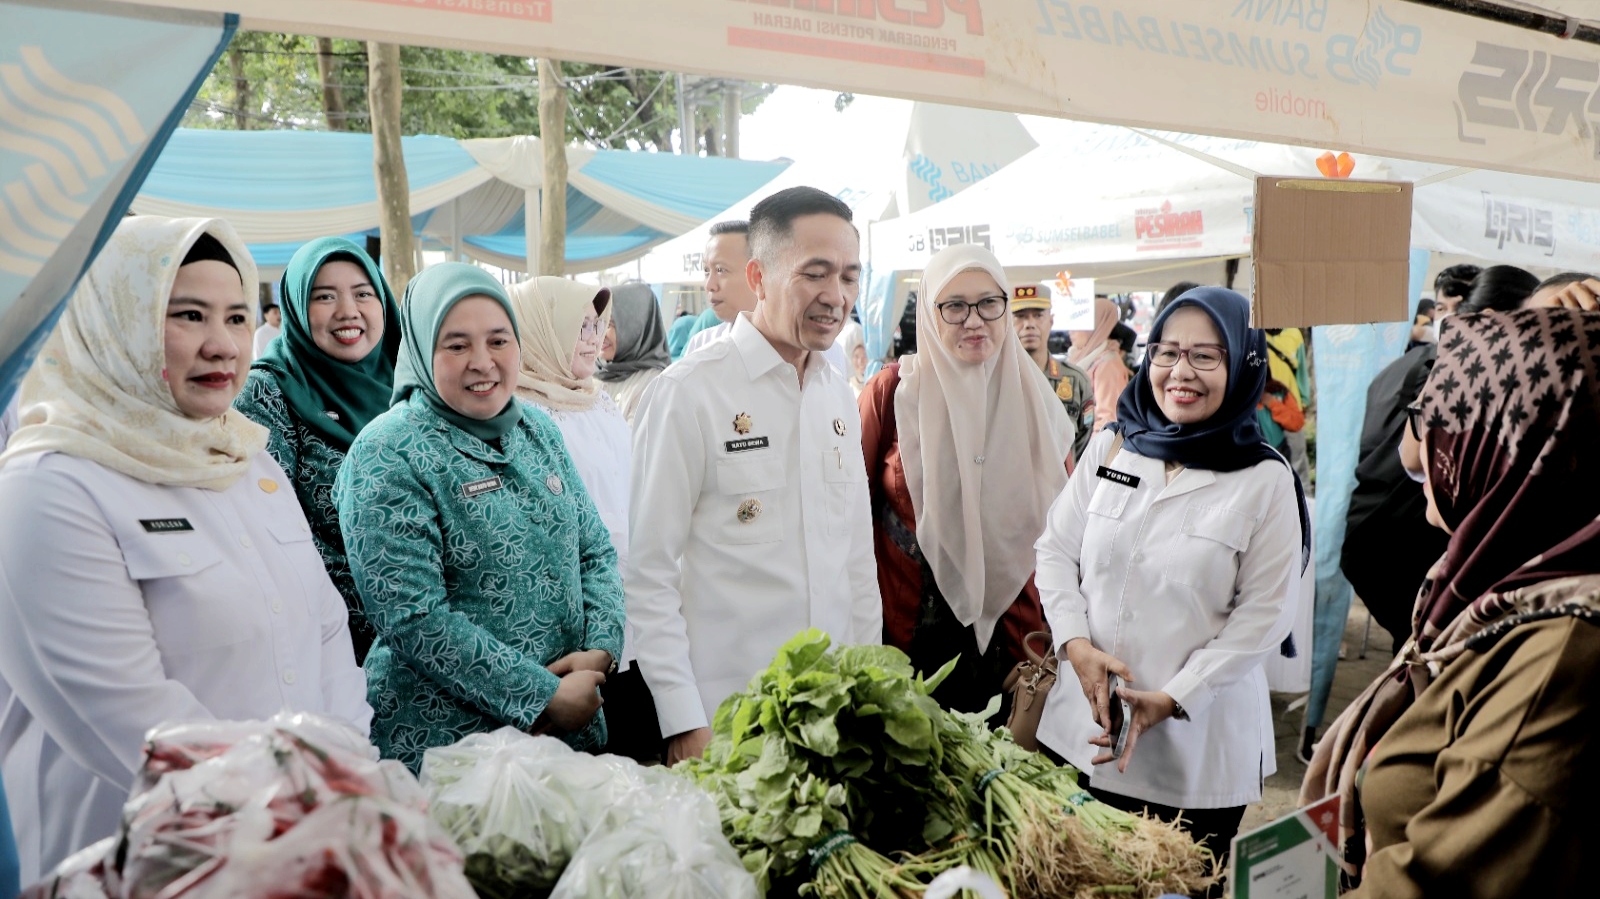 Tinjau Bazar Ramadan, Ratu Dewa: Peran UKM Tingkatkan Perekonomian di Palembang